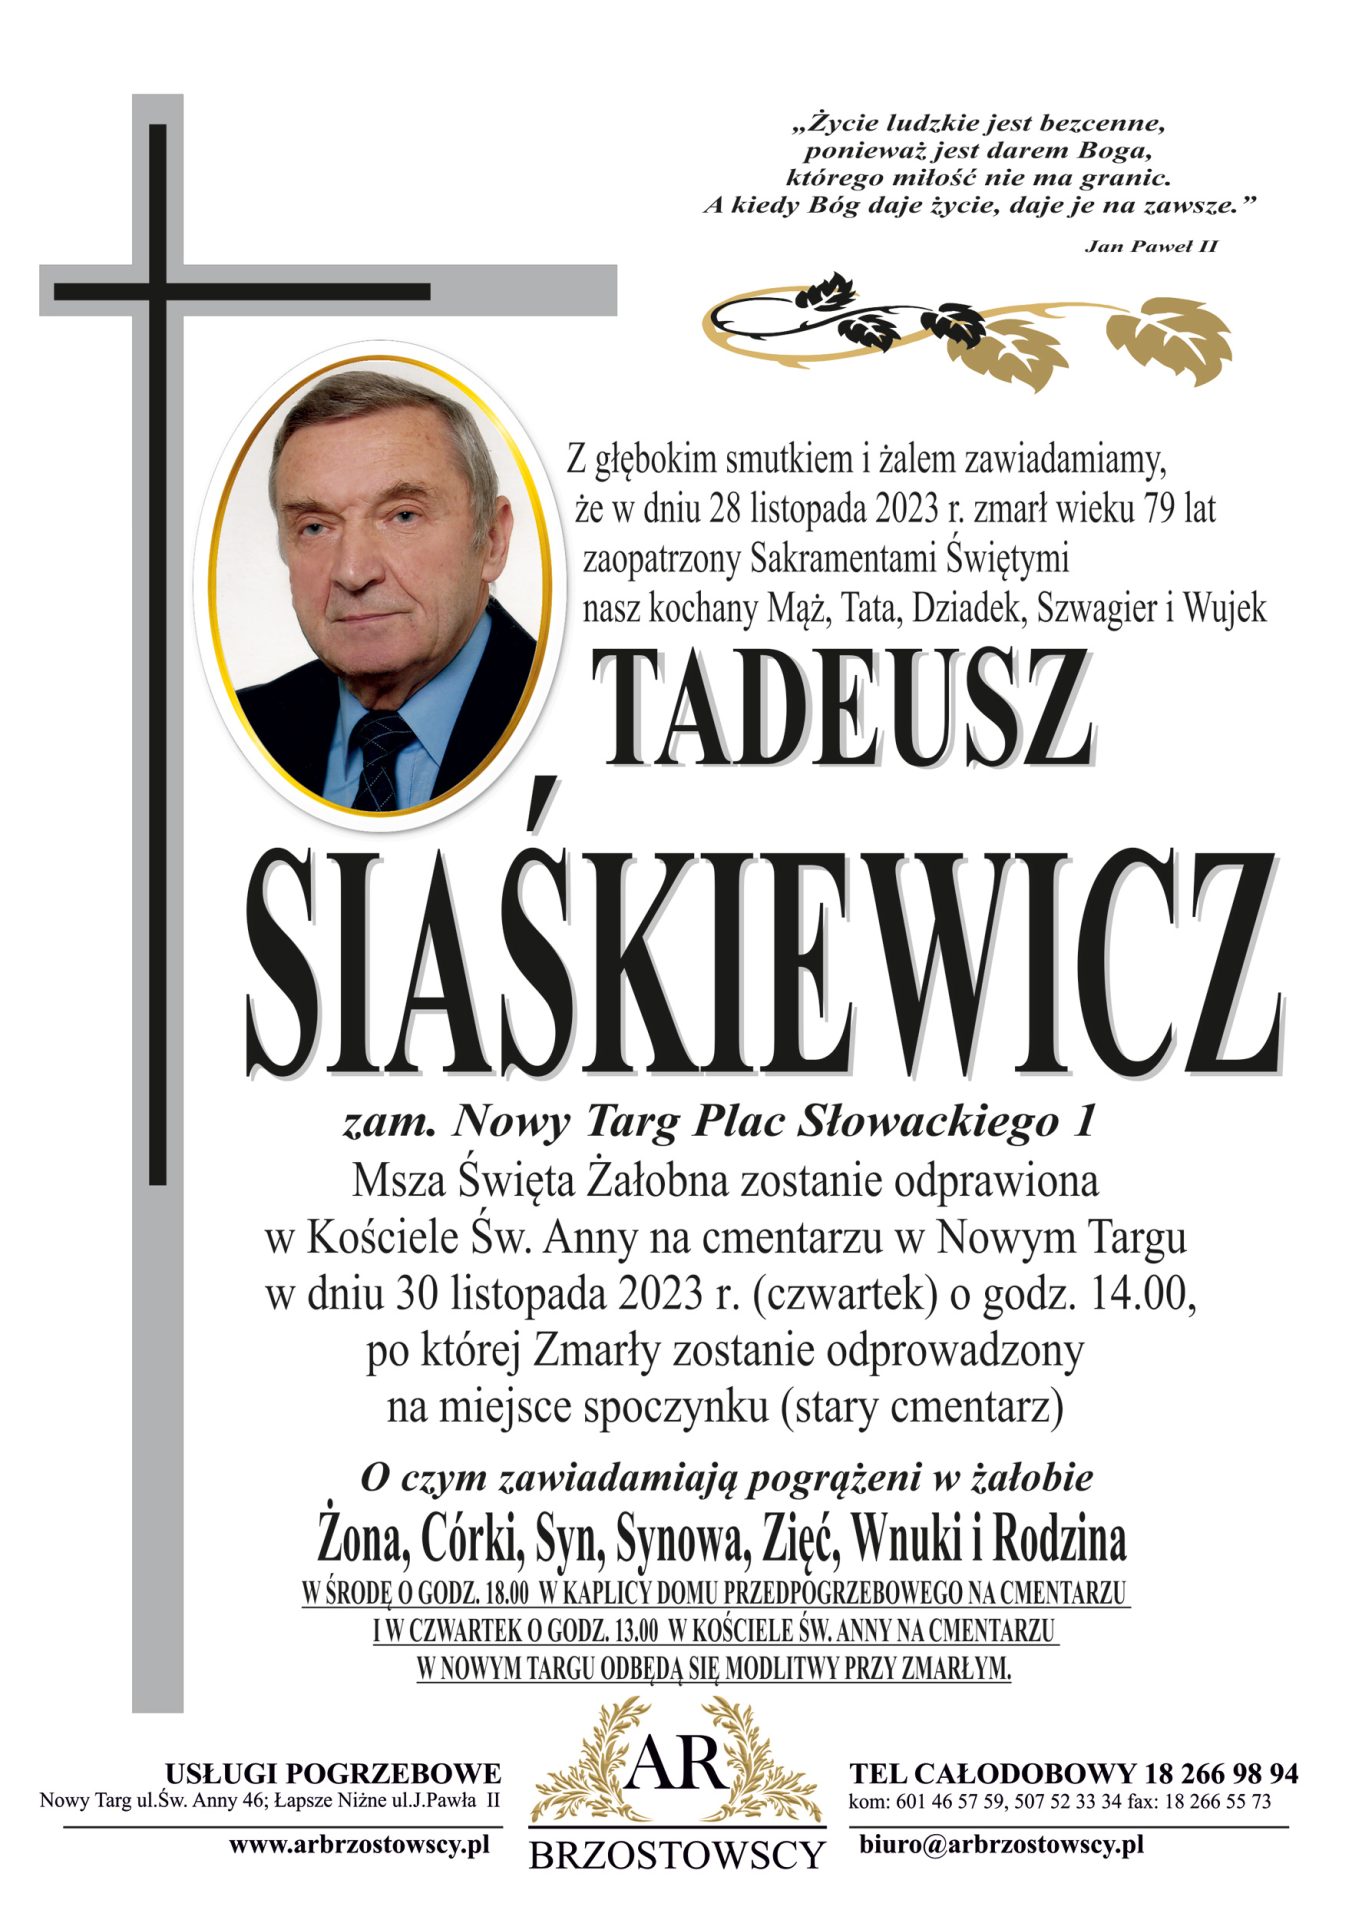 Tadeusz Śiaśkiewicz